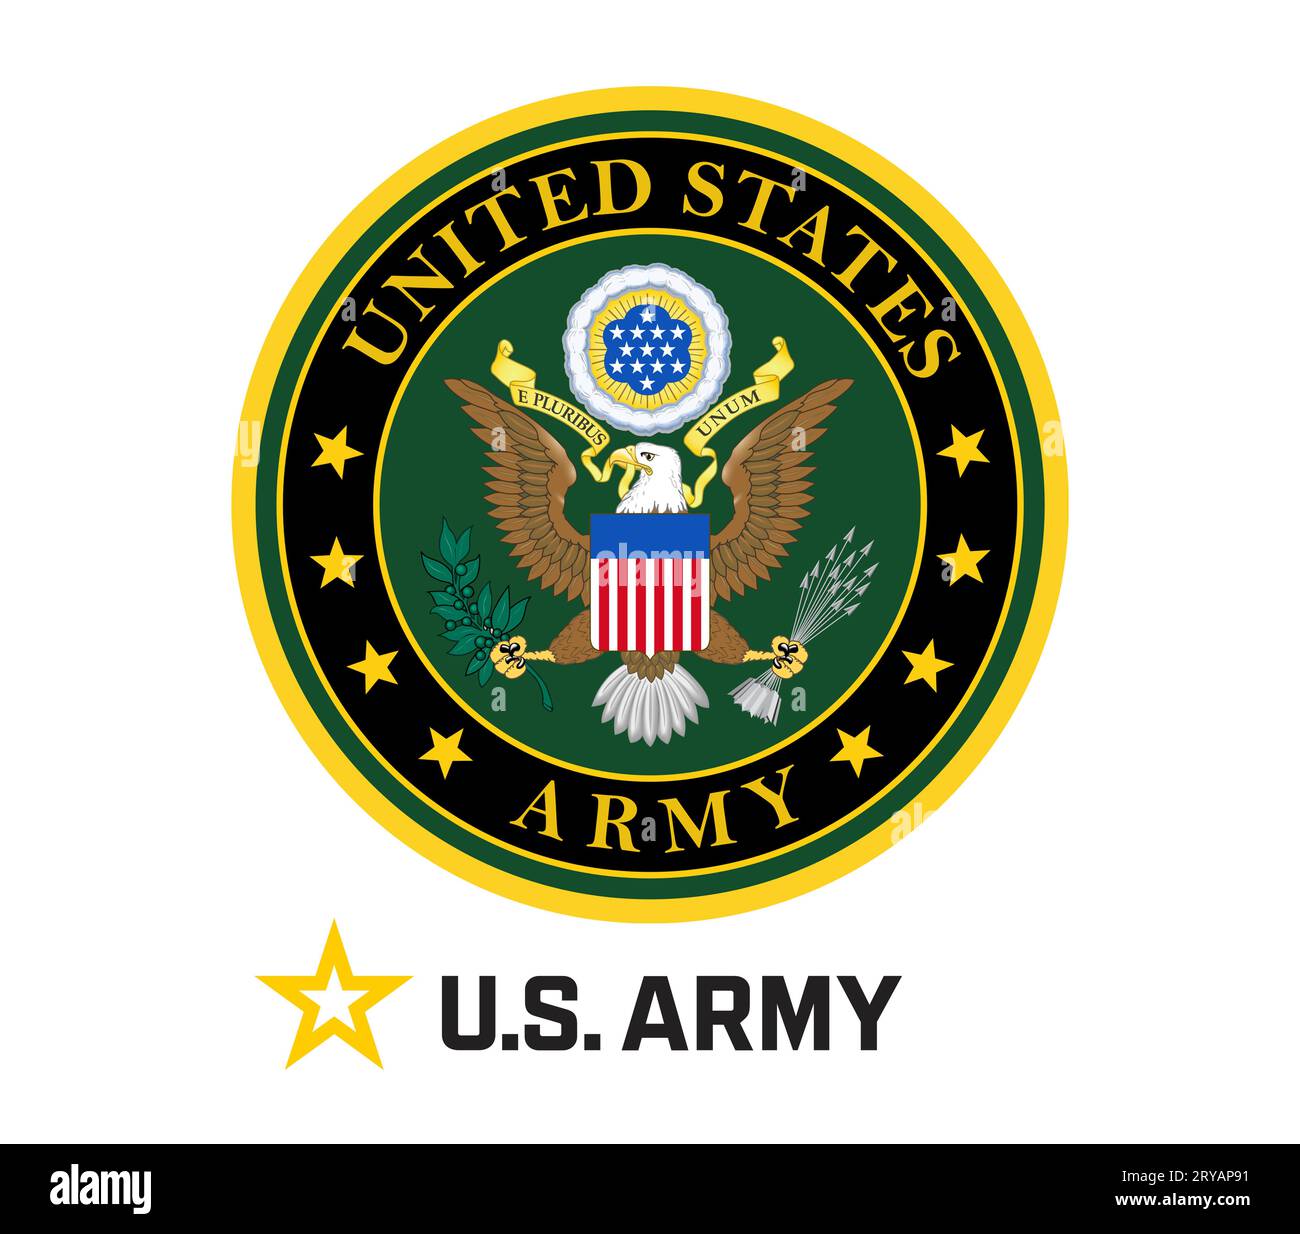 United States Army emblem logo Stock Photo